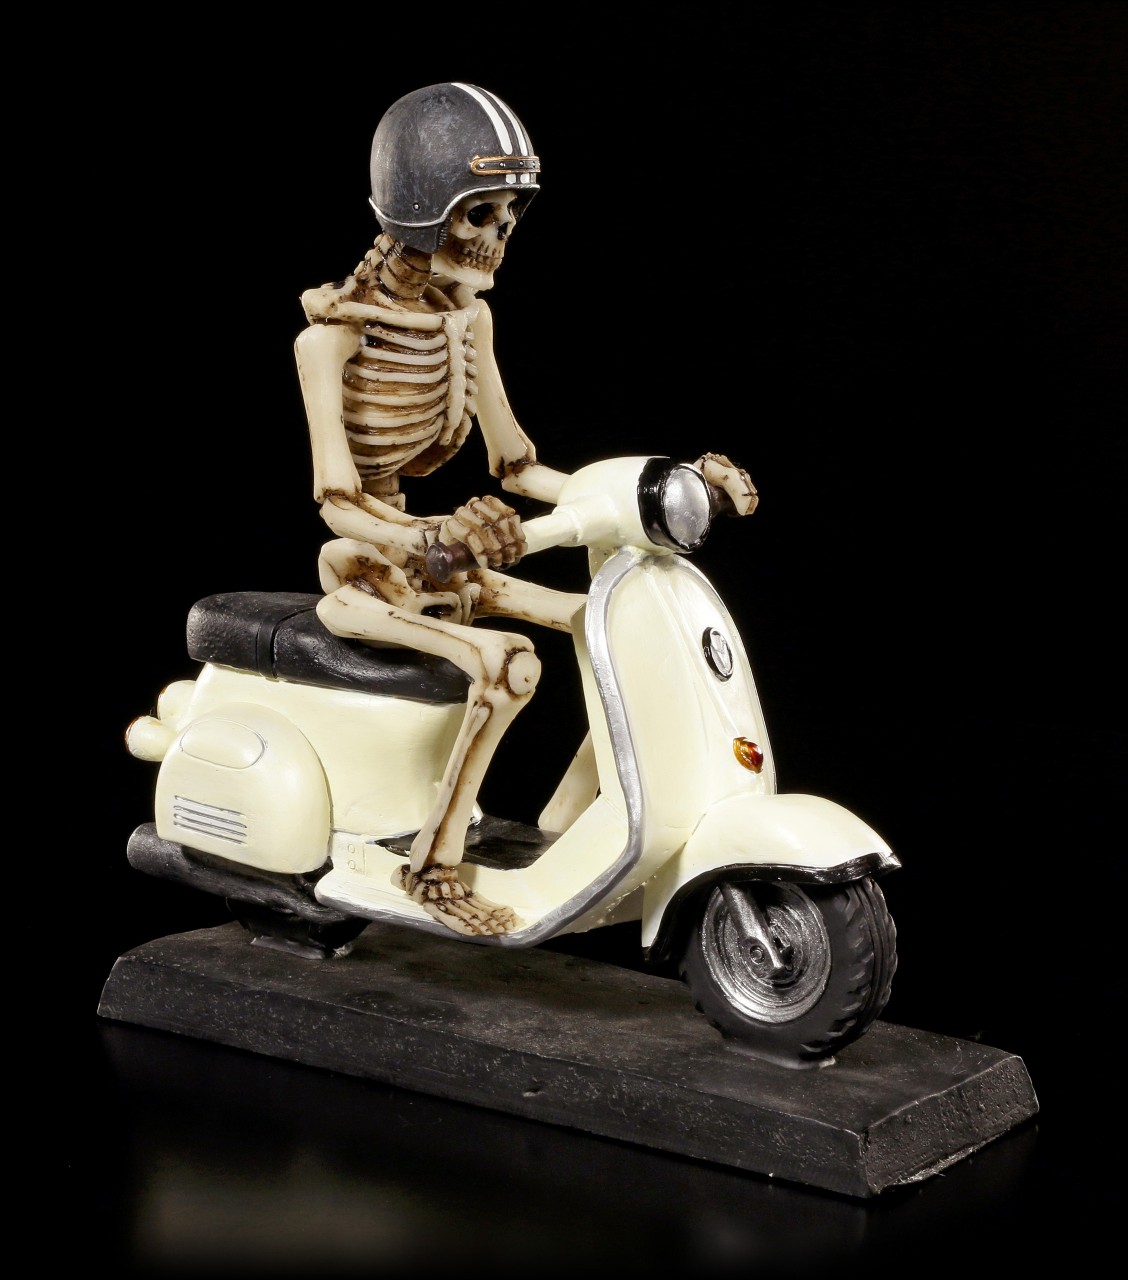 Skeleton Figurine on Scooter